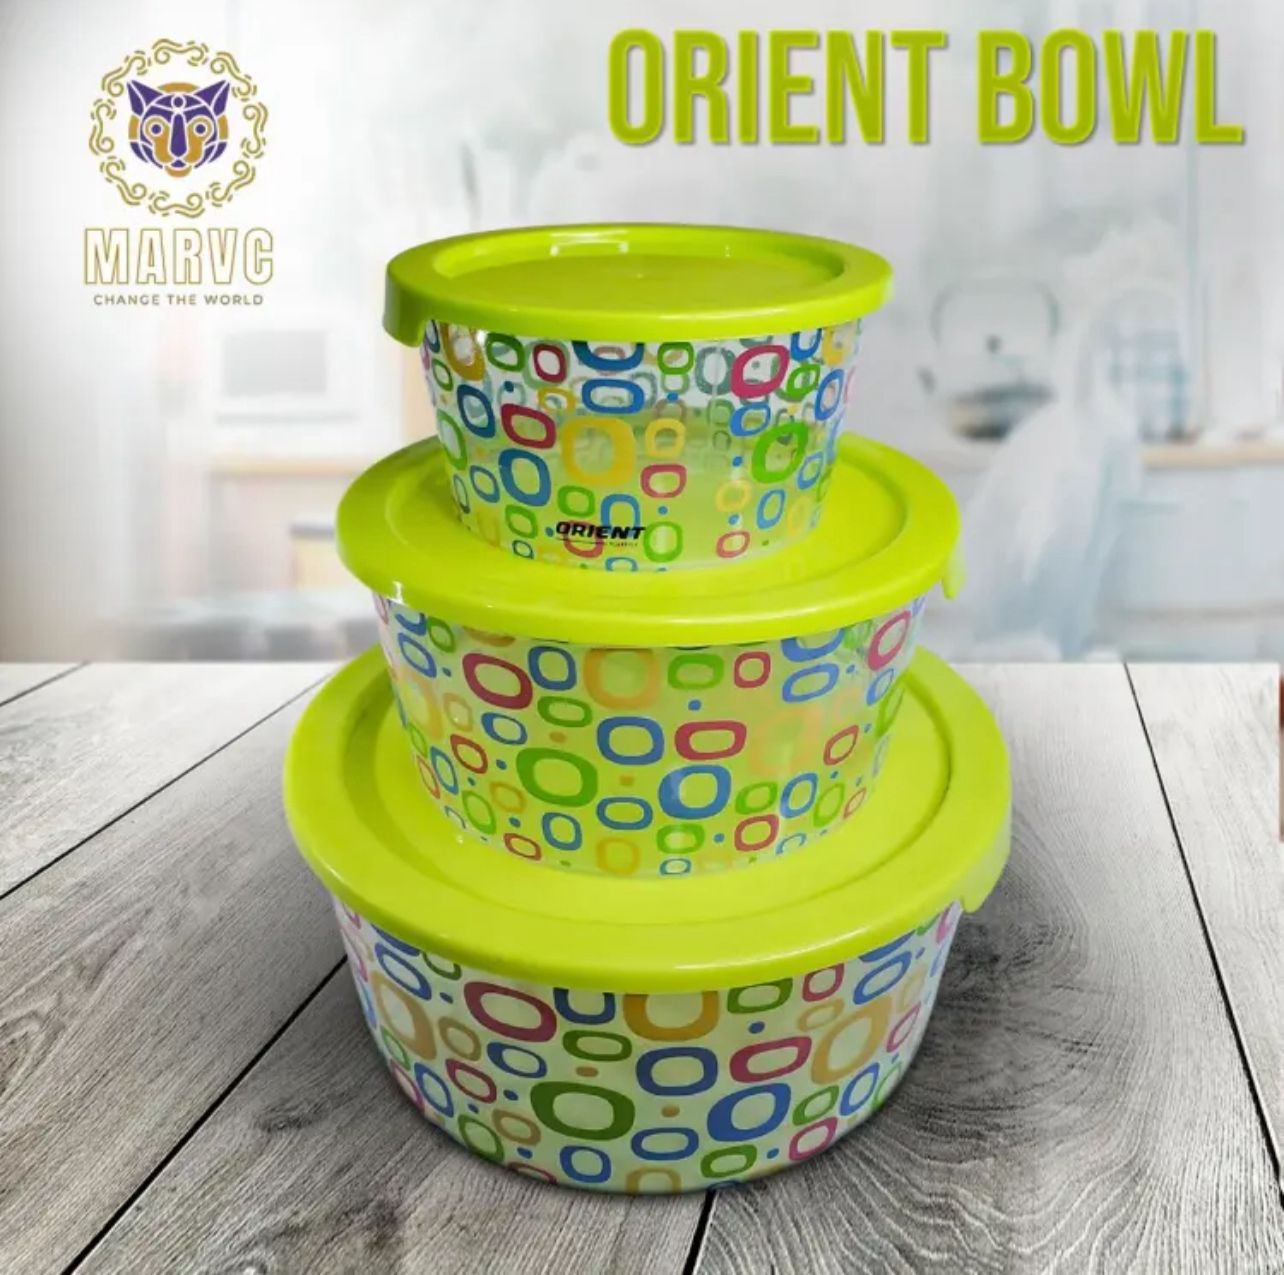 Premium Plastic Bowl set in 3 Different colors